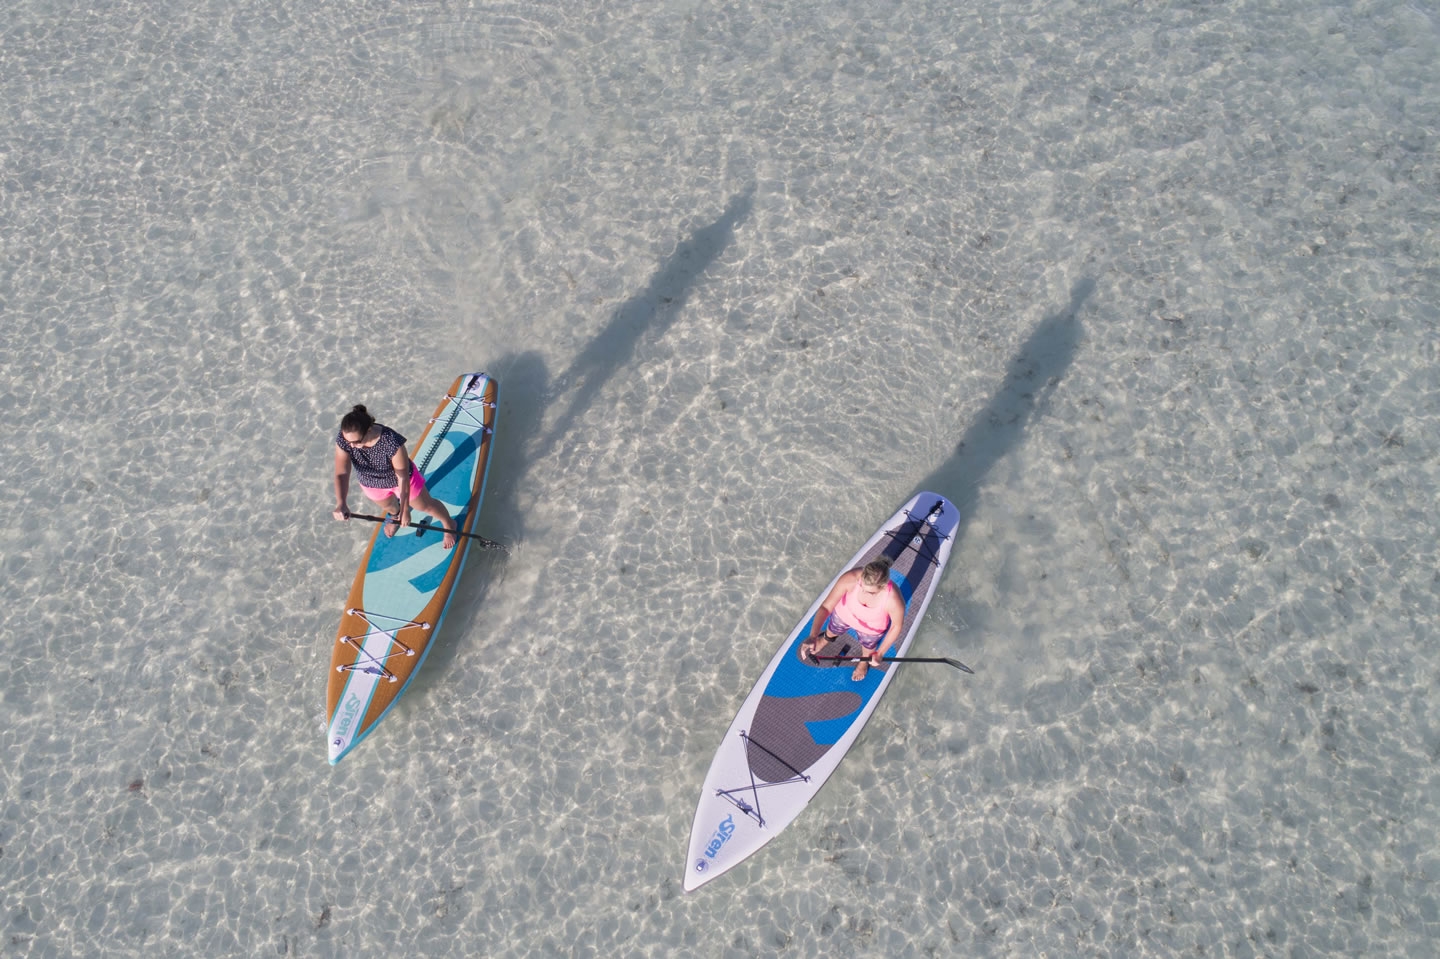 Gewinne eine SUP-Reise nach Florida mit SIREN SUPsurfing